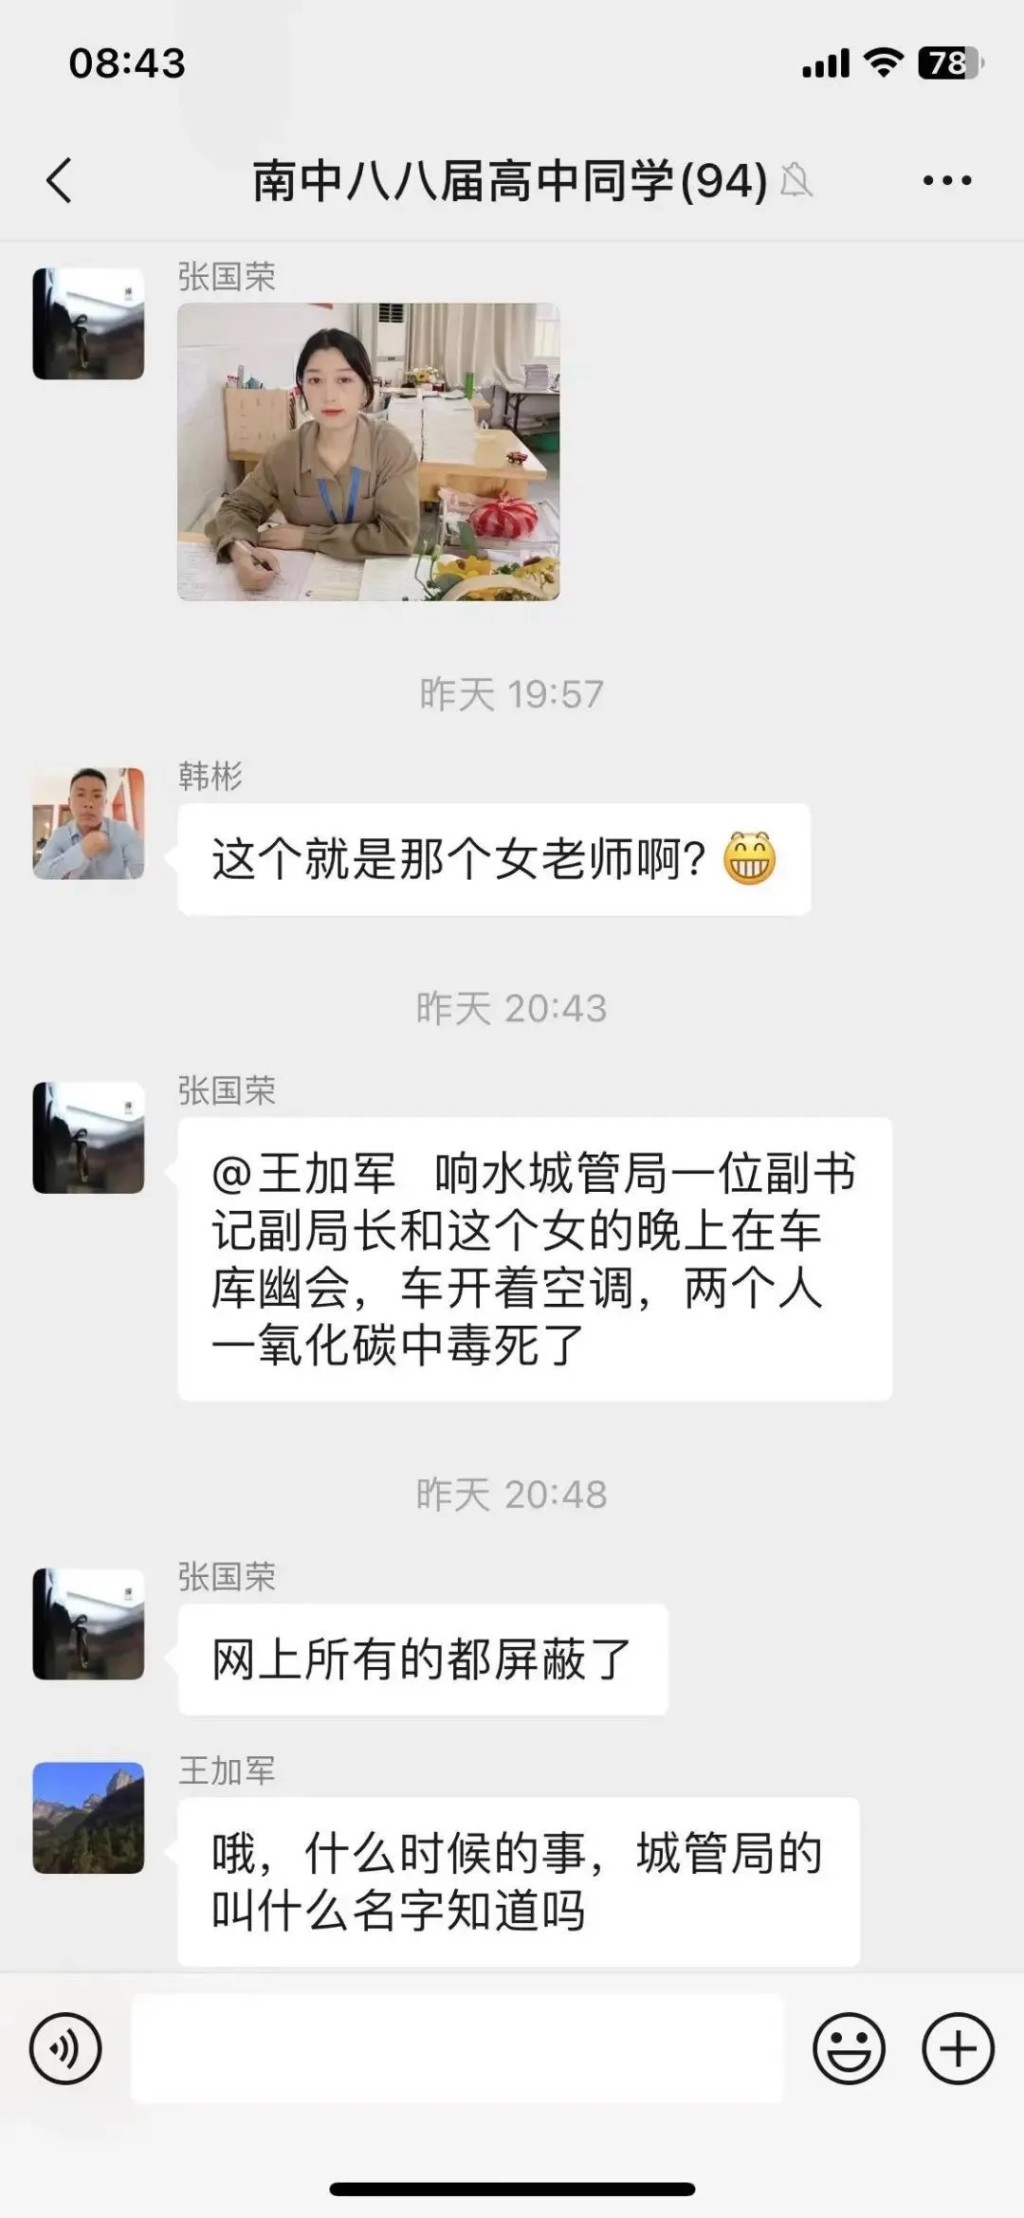 网民一度广泛讨论响水县城管局副局长苏阳及小学女教师王海萍怀疑「车震」事件。